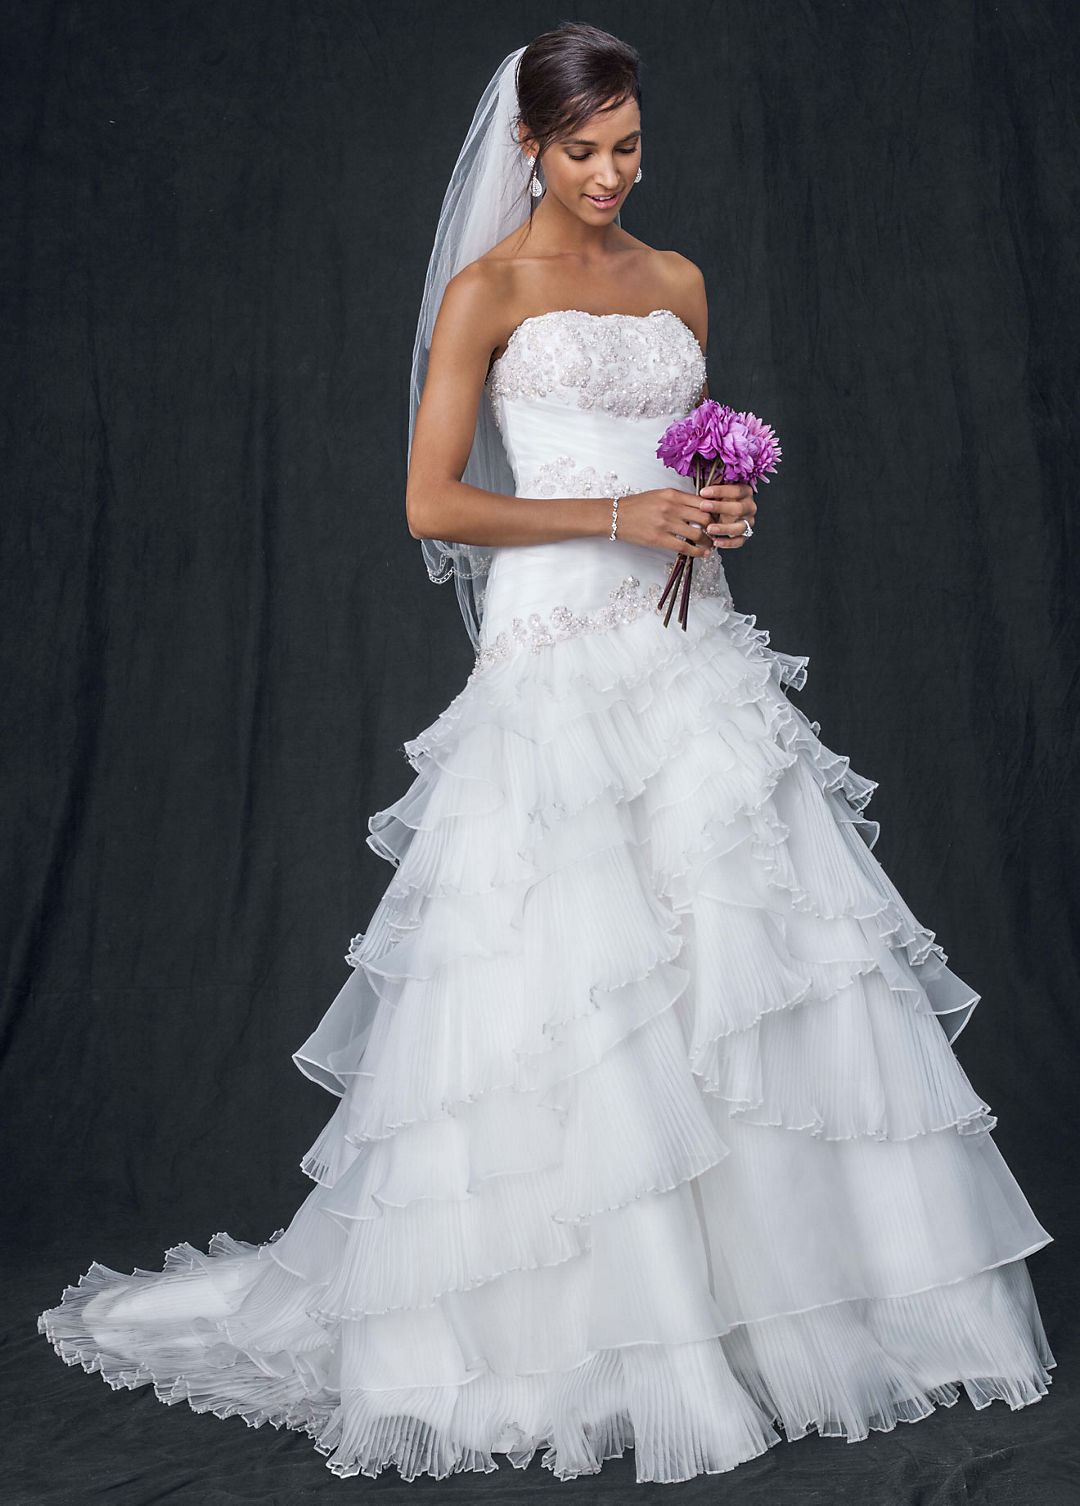 As-Is Chiffon Ruffled Plus Size Wedding Dress Image 1